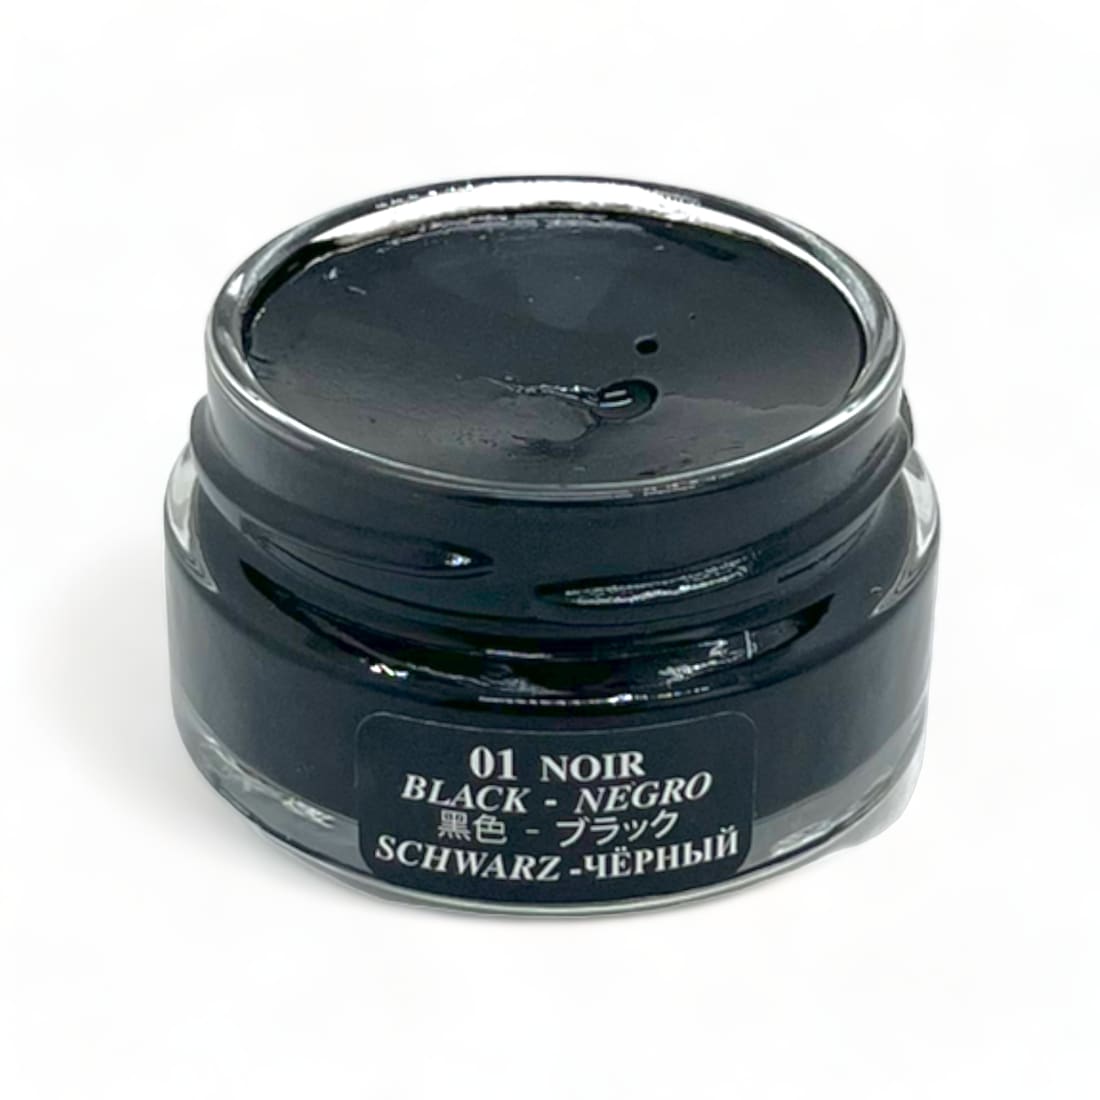 Cirage Crème Surfine Noir - Saphir - 50 ml - Accessoires